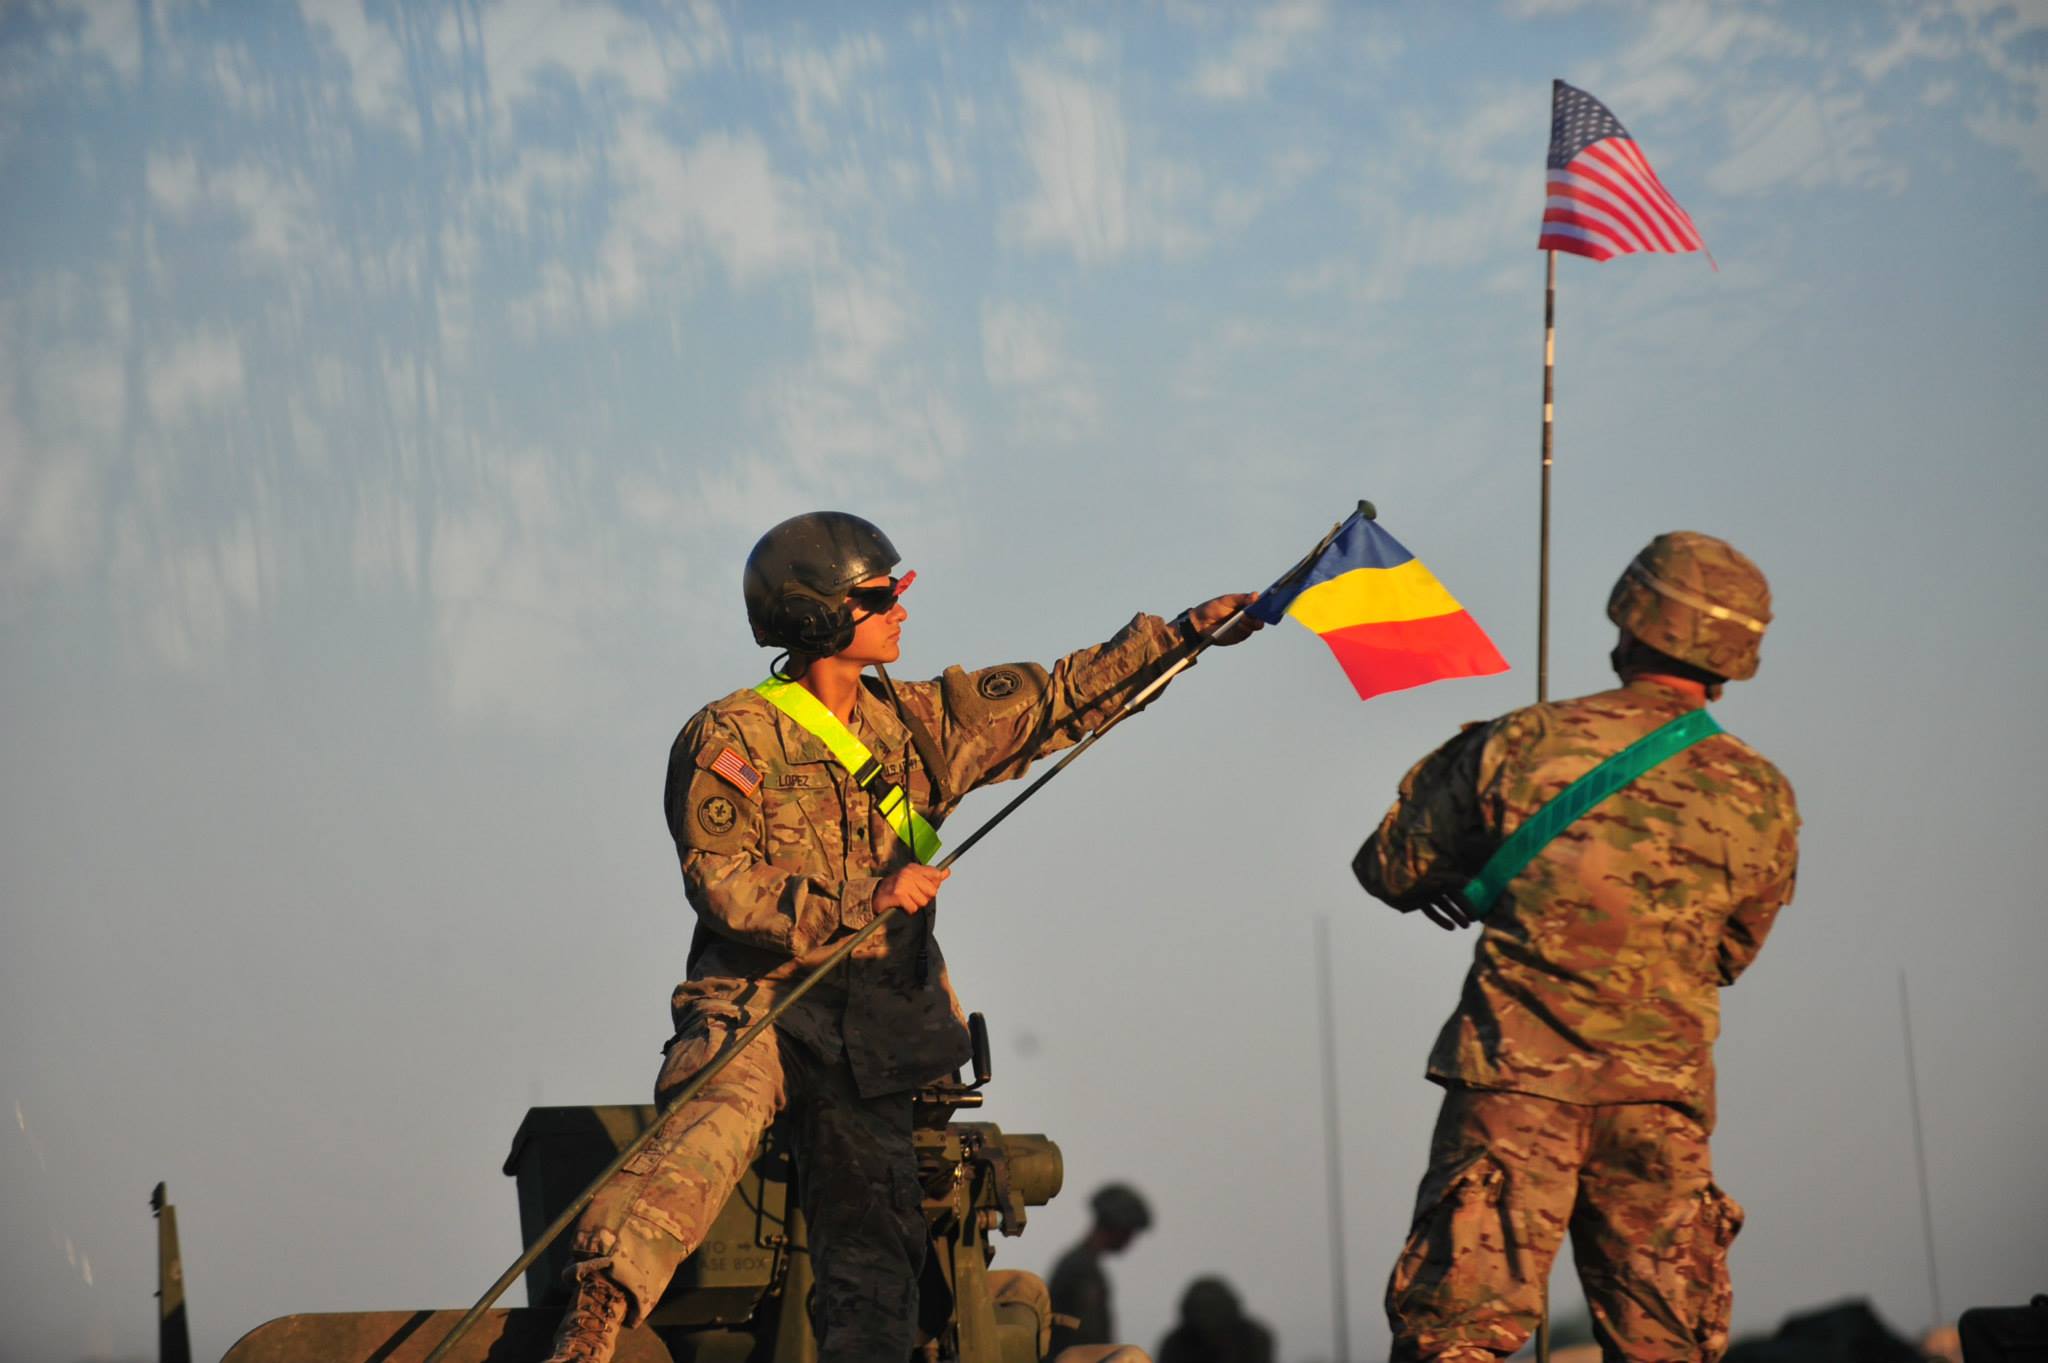 America negociează cu Rusia. Cum arată România din perspectiva securității?